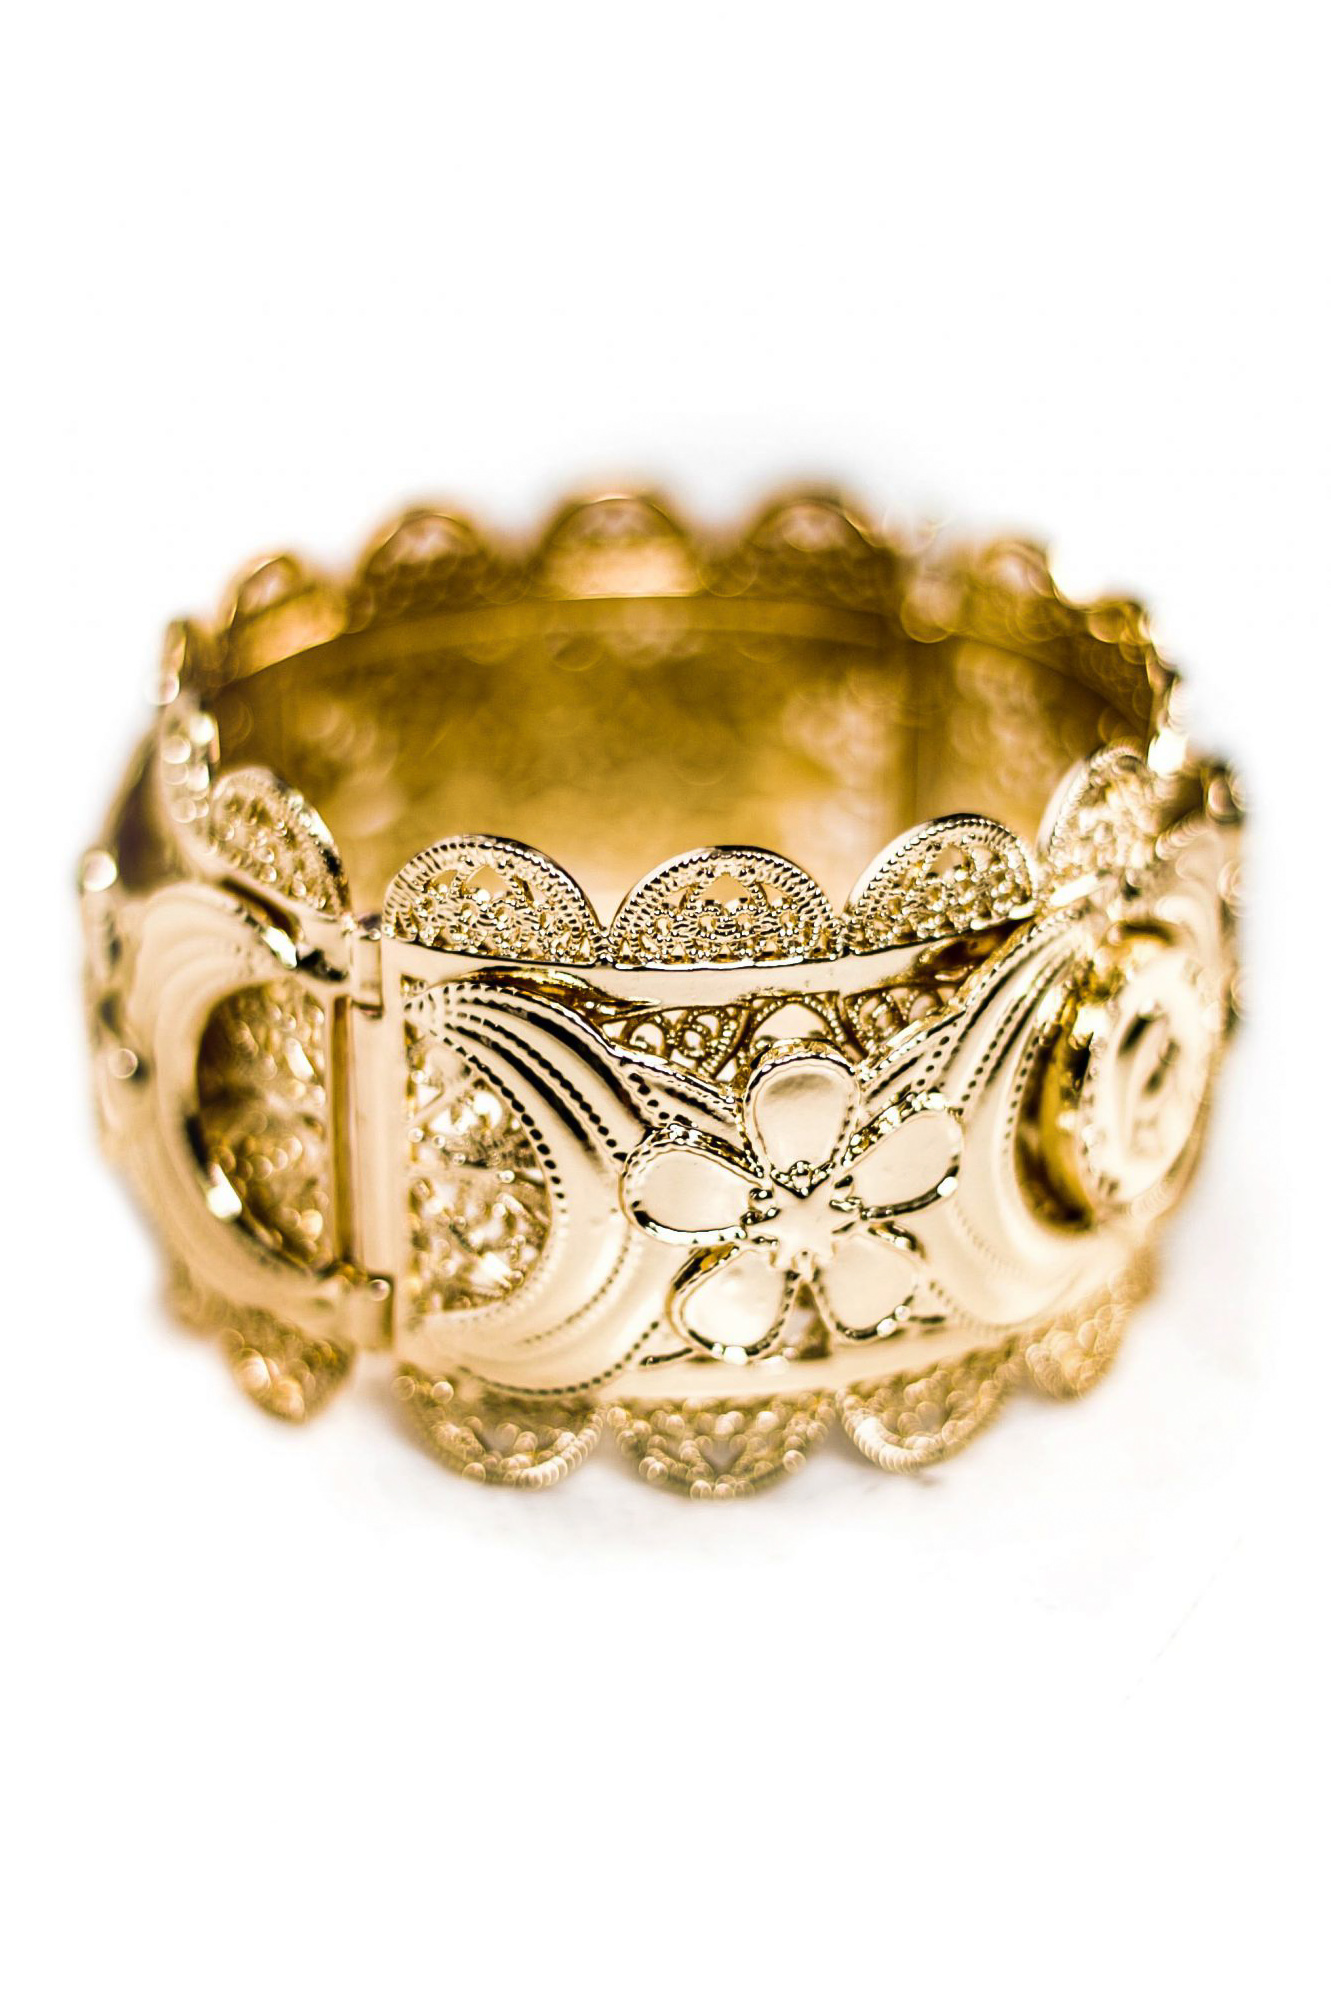 Bracelet manchette HENNAYA avec un look baroque inspiré des bracelets traditionnels du Maghreb.